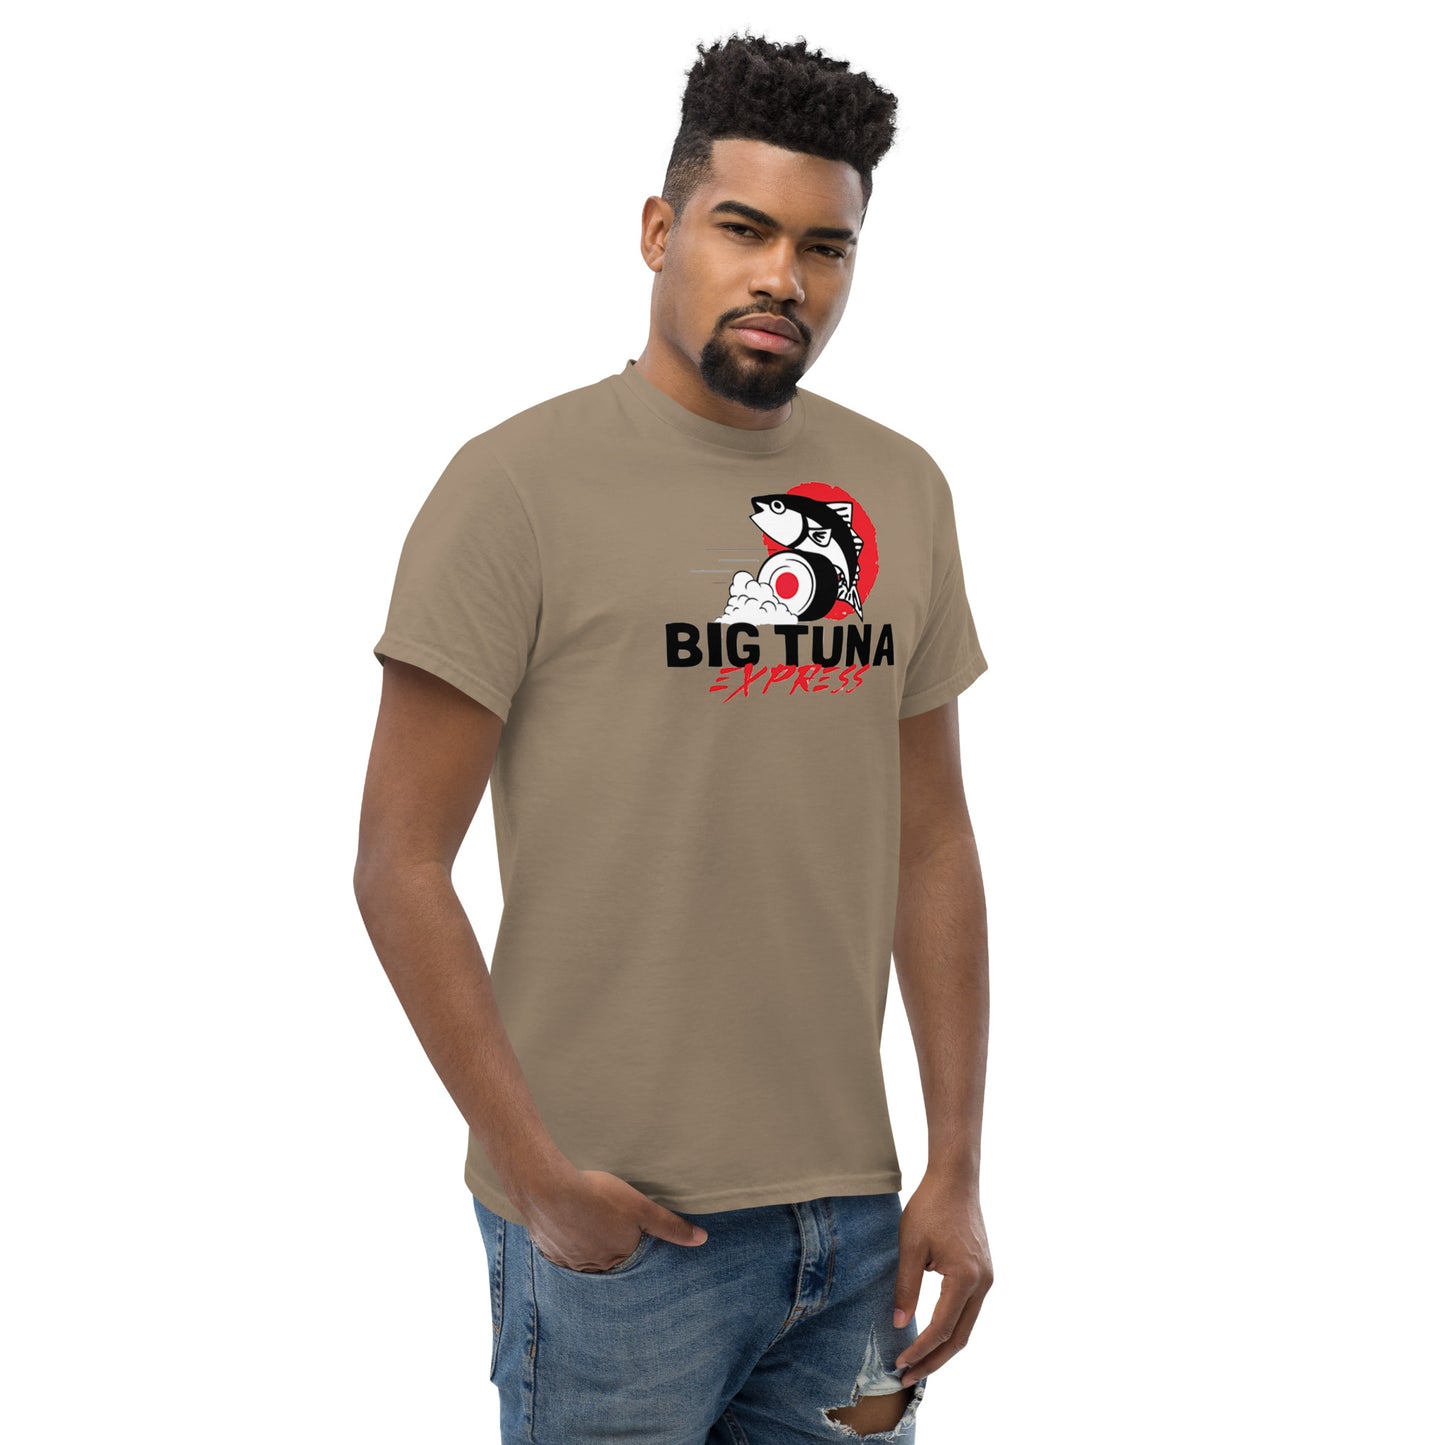 Big Tuna Express Classic T-shirt